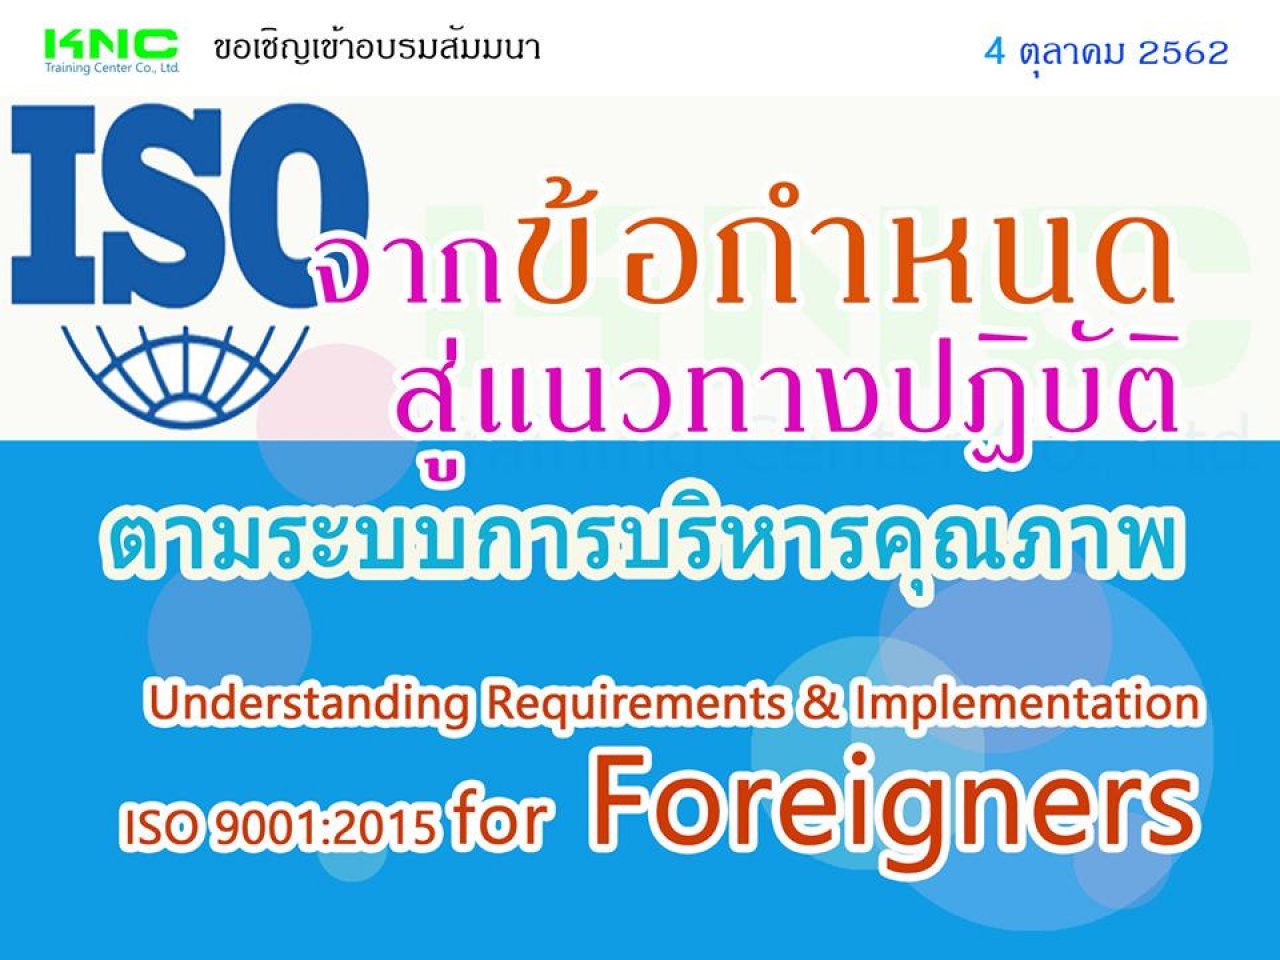 จากข้อกำหนดสู่แนวทางปฏิบัติตามระบบการบริหารคุณภาพ (หลักสูตรสำหรับชาวต่างชาติ) : Understanding Requirements & Implementation ISO 9001:2015 for Foreigners